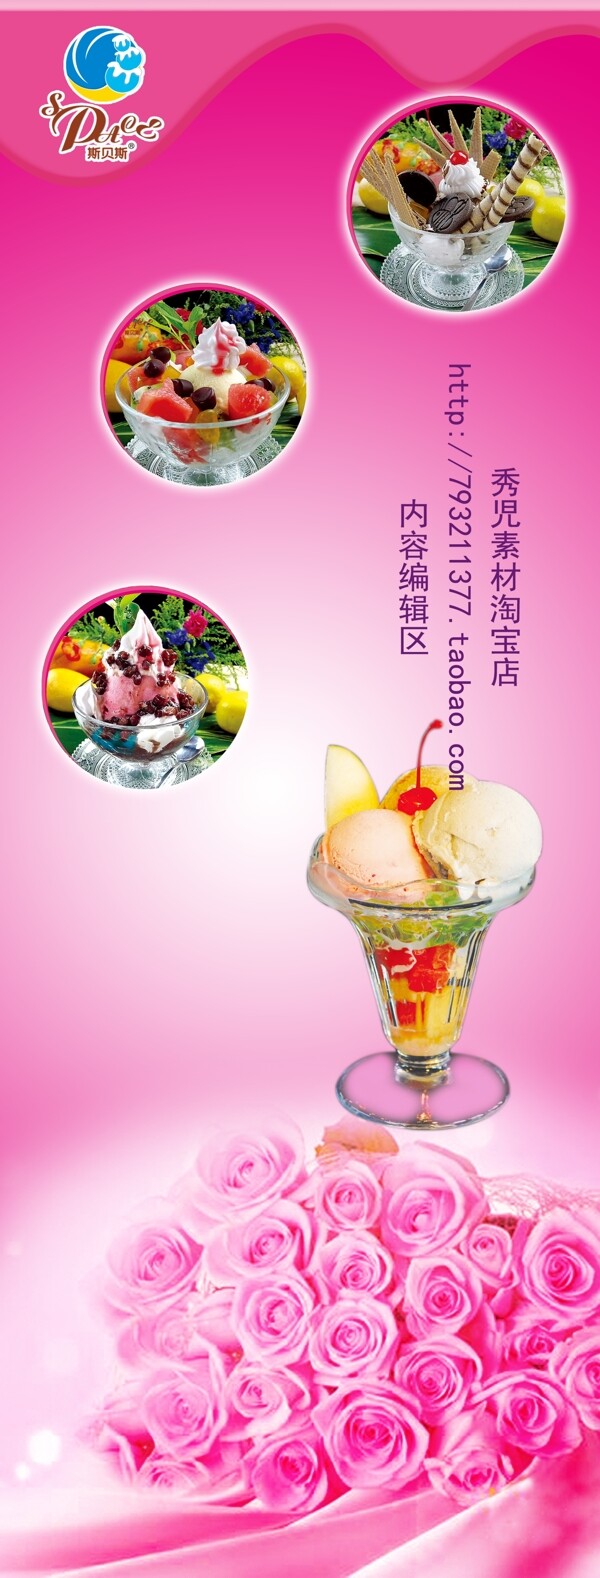 精美冰淇淋粉色展架设计模板画面素材